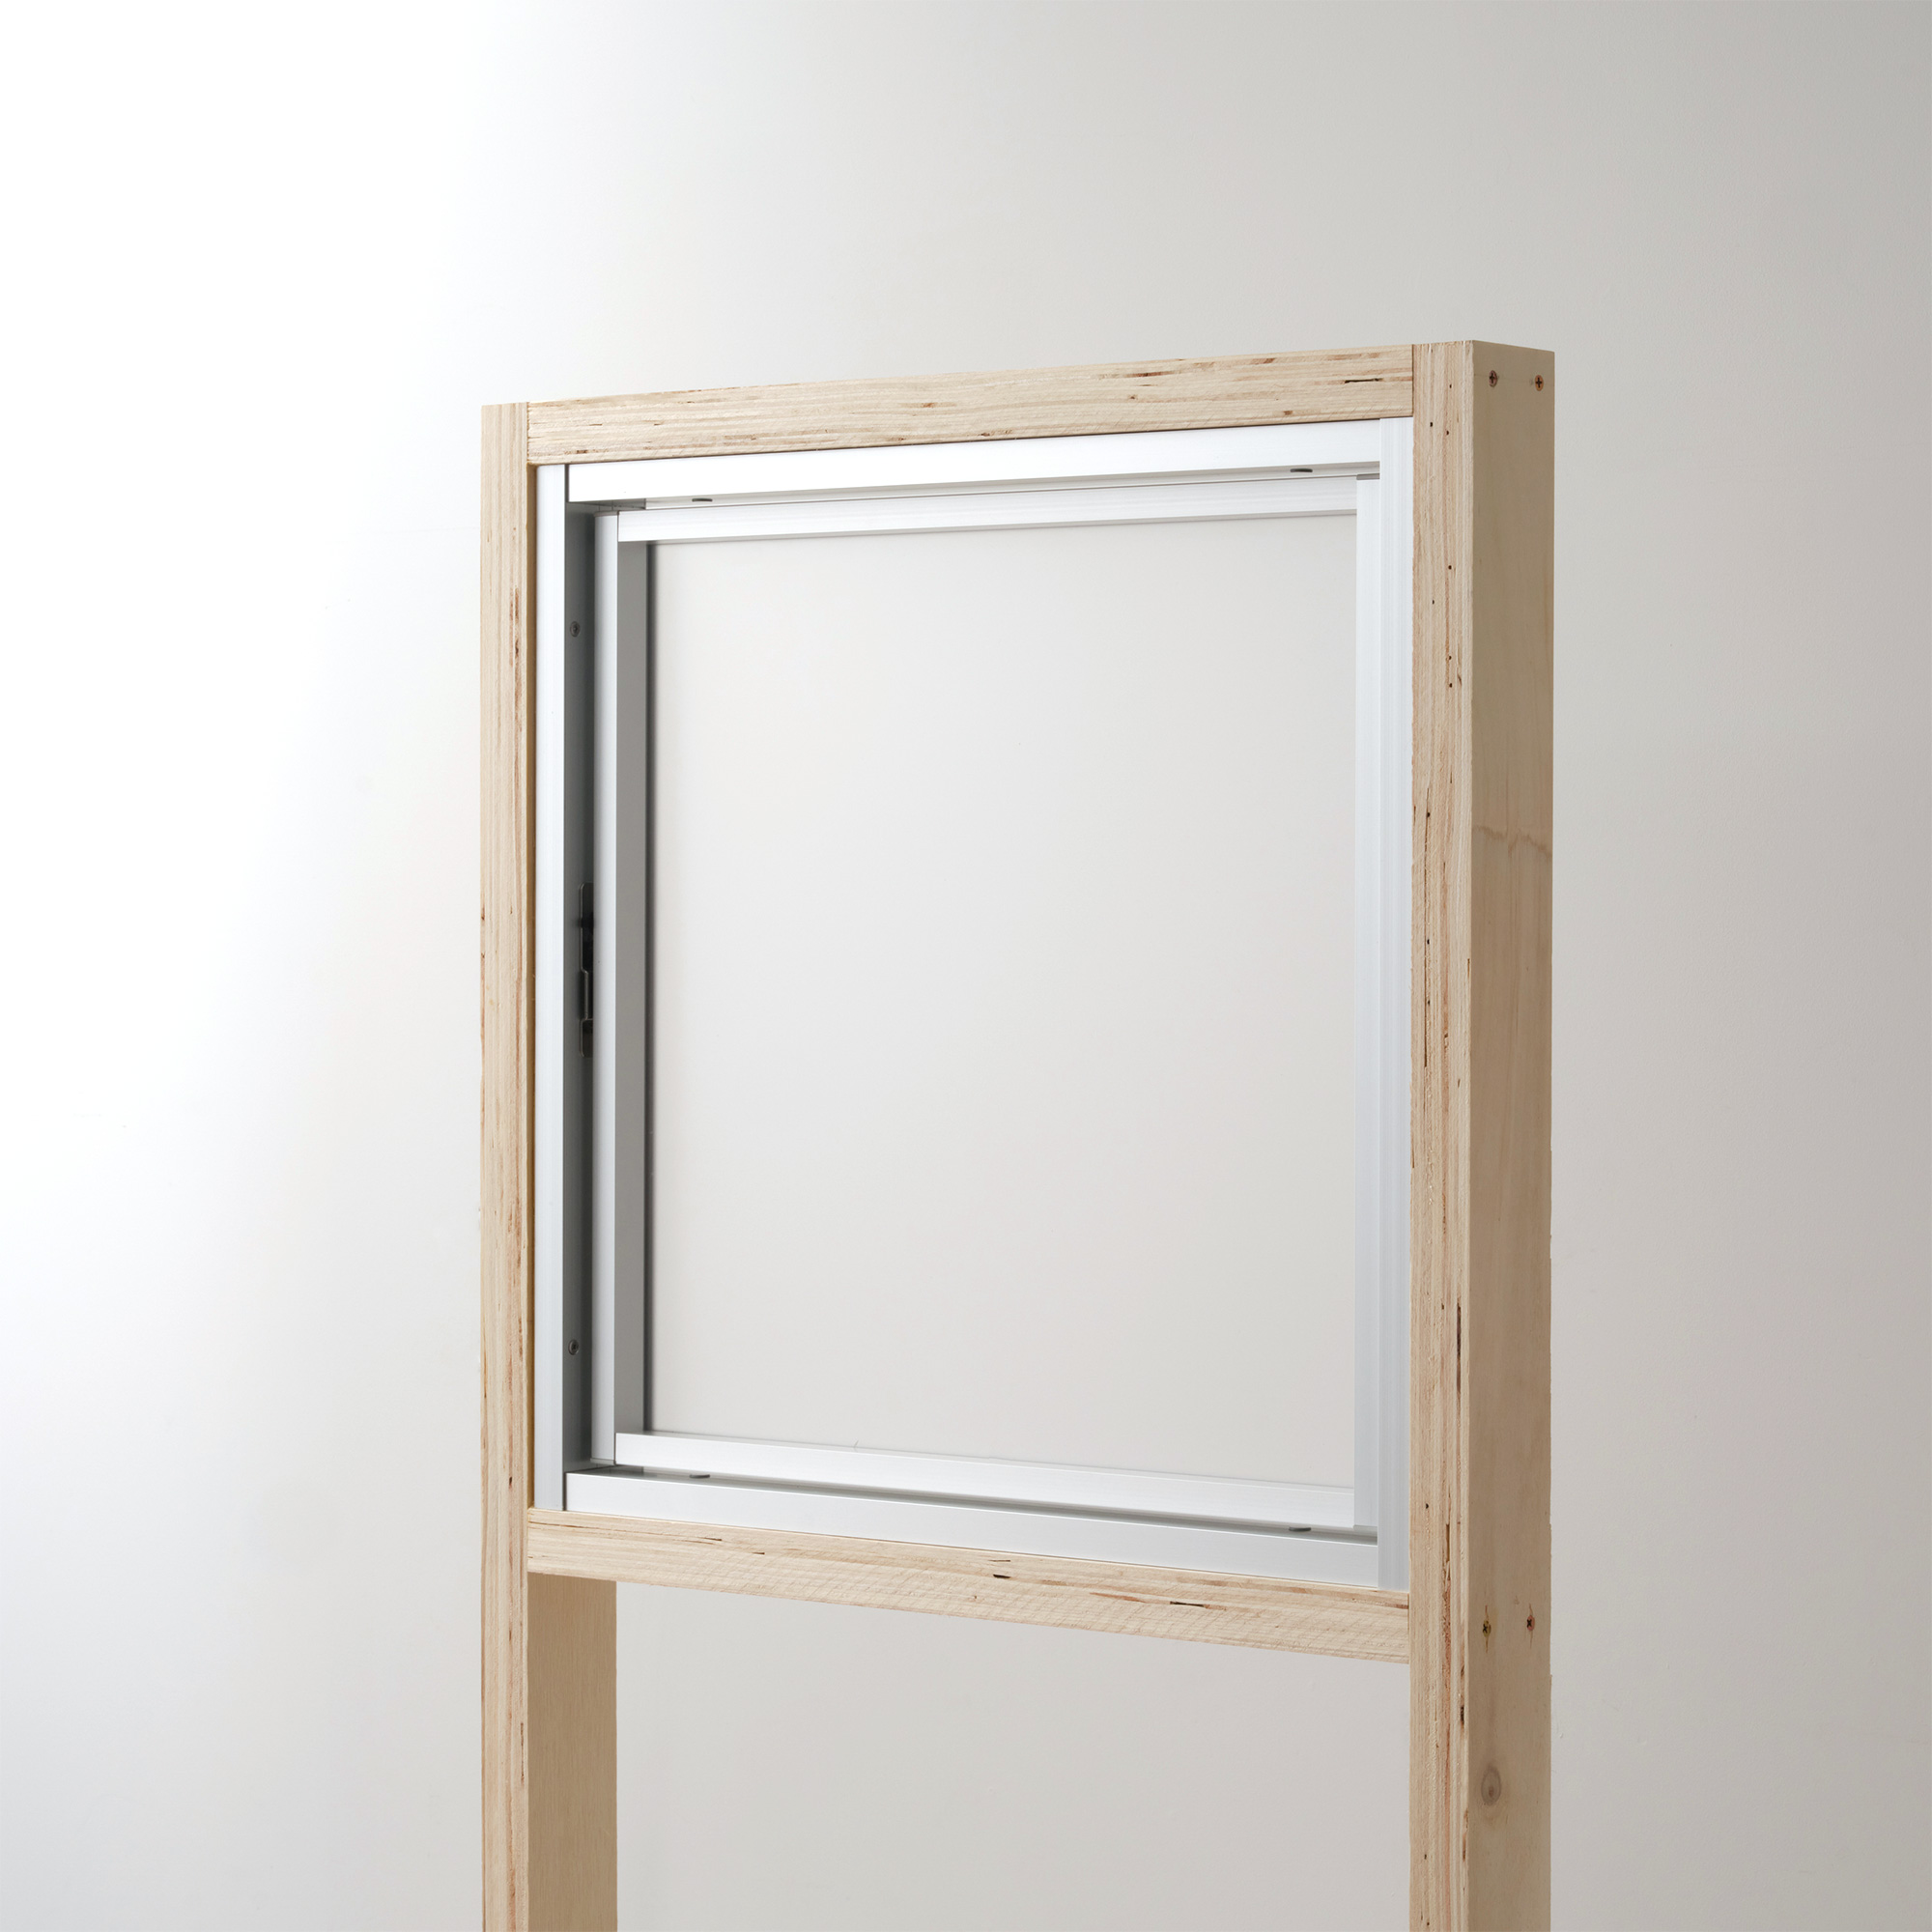 室内アルミサッシ FIX窓 シルバー ガラス DW-DR013-03-G201 回転窓 W500 H500 マット樹脂パネル